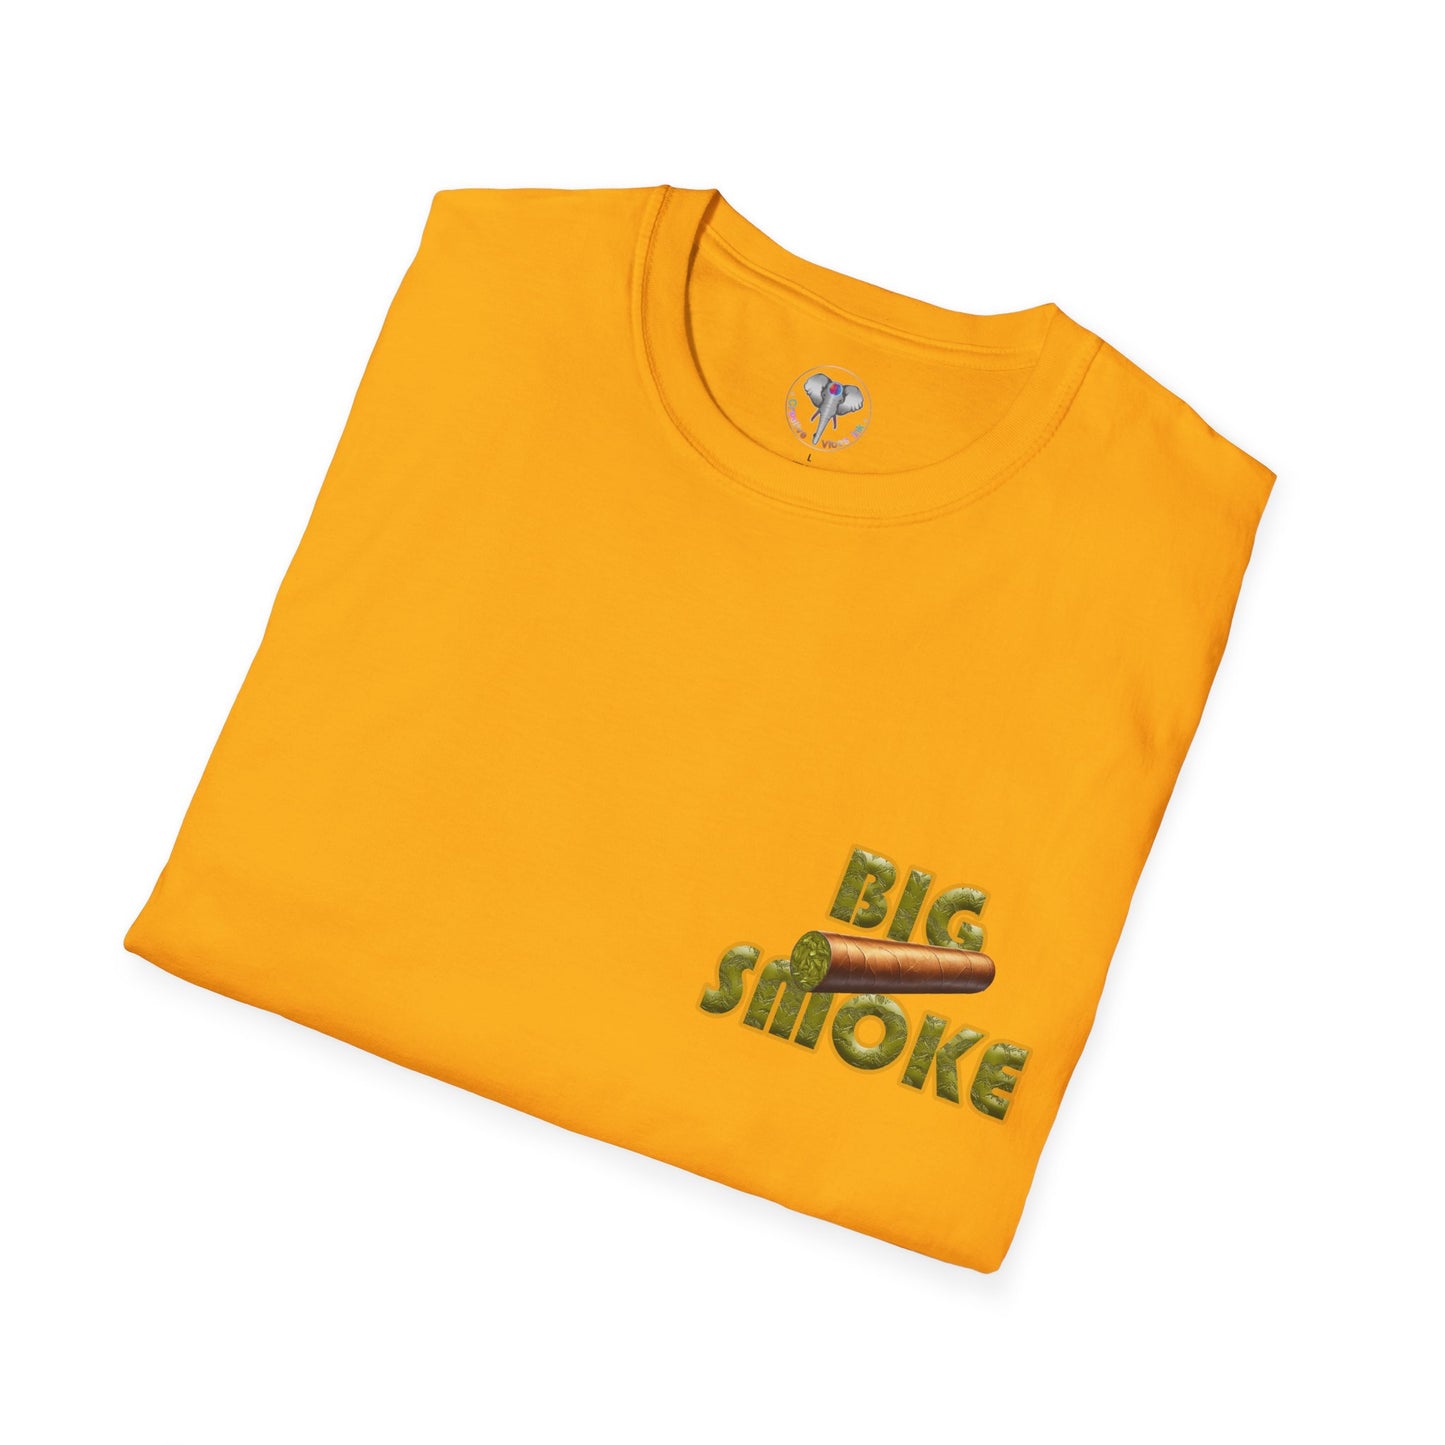 Big Smoke Graphic T-shirt